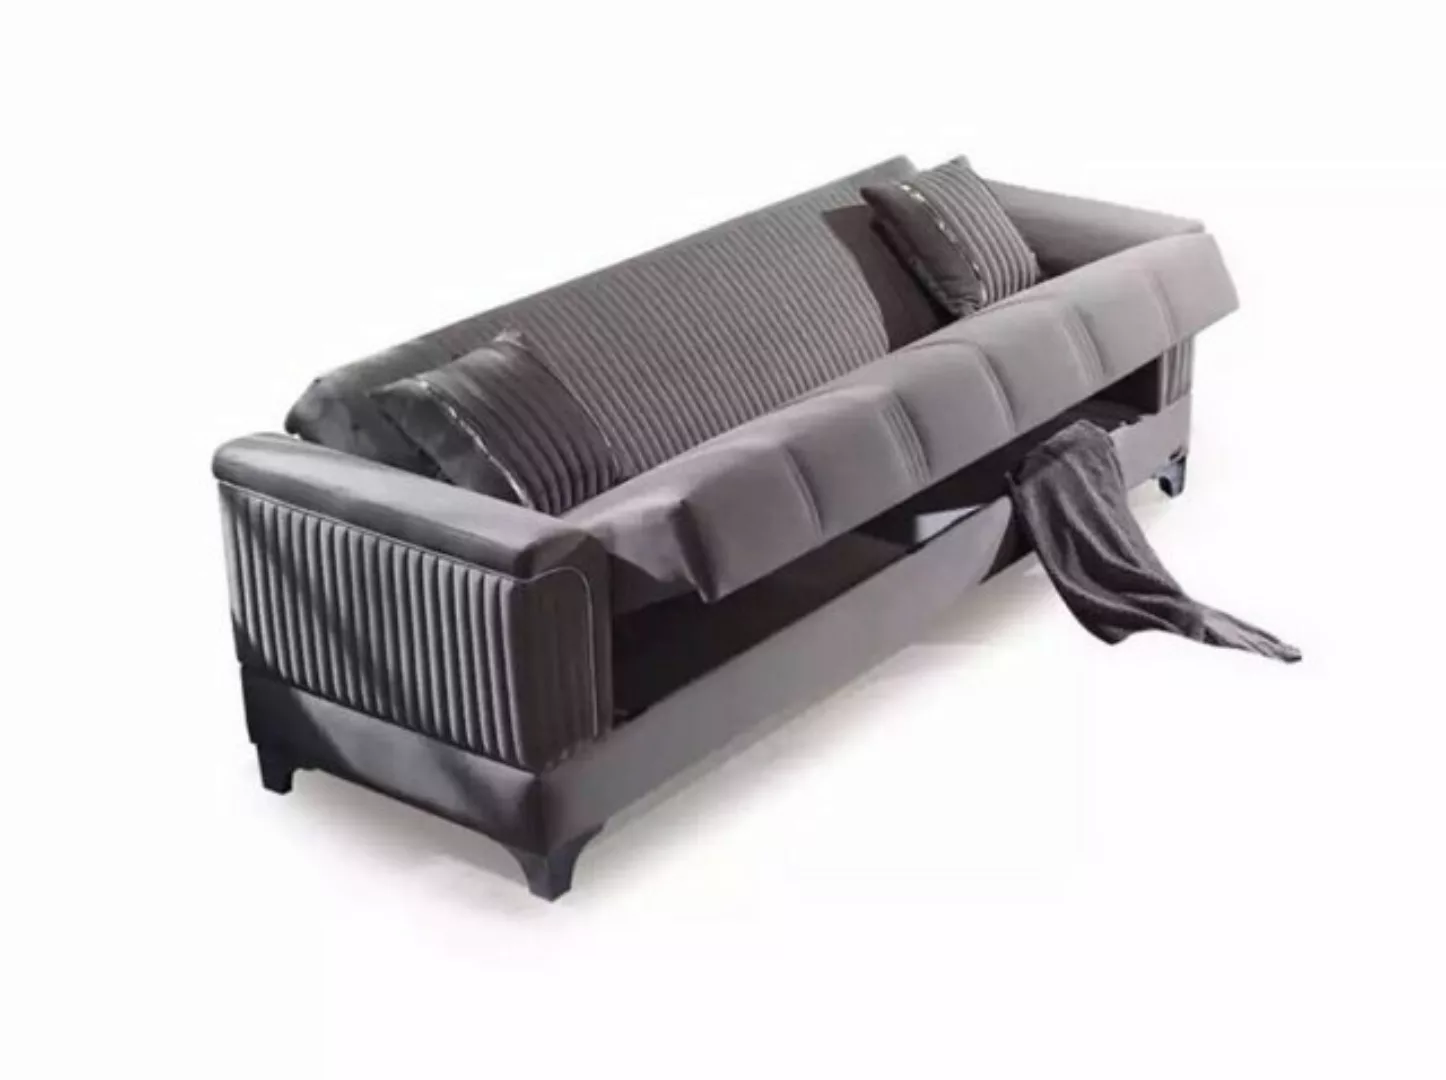 JVmoebel Sofa Graues Sofa Luxus 3-Sitzer Couch Wohnzimmer, 1 Teile, Made in günstig online kaufen